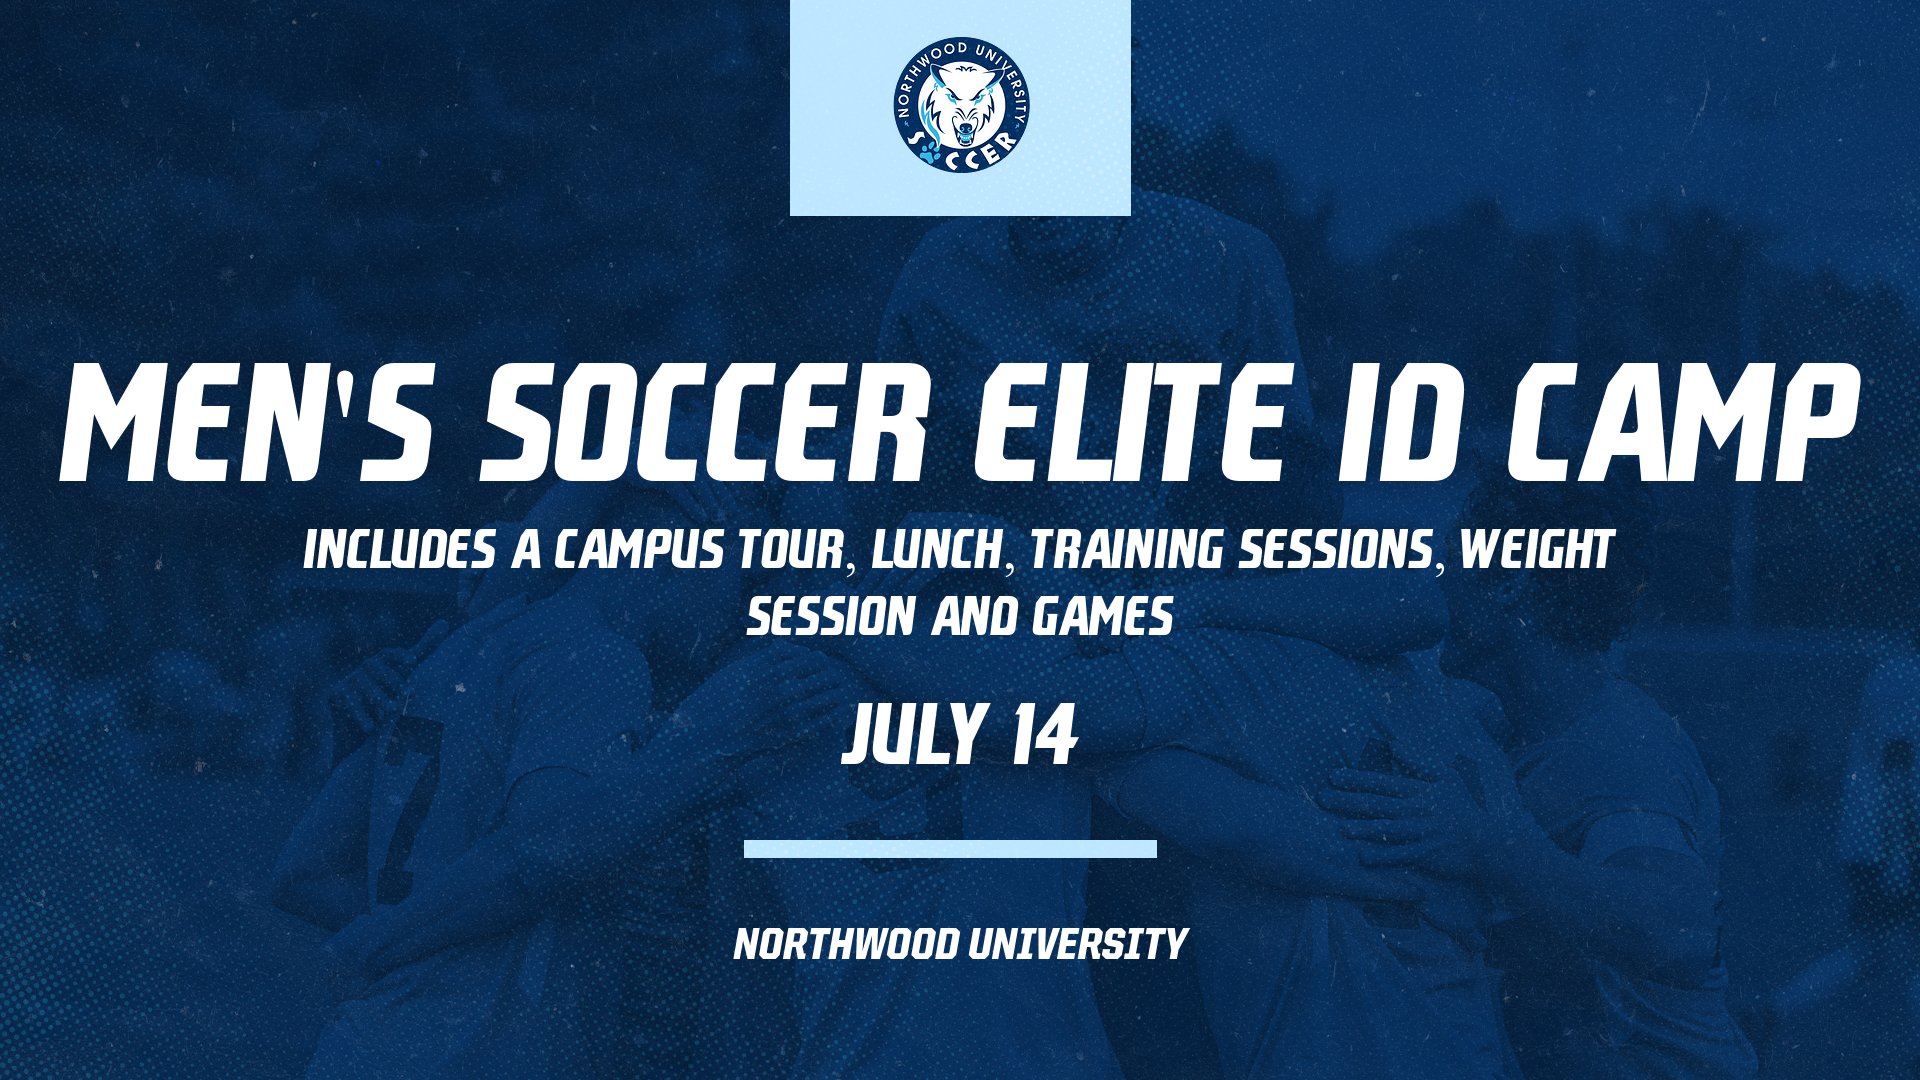 Men's Soccer To Host Men's Soccer Elite ID Camp July 14